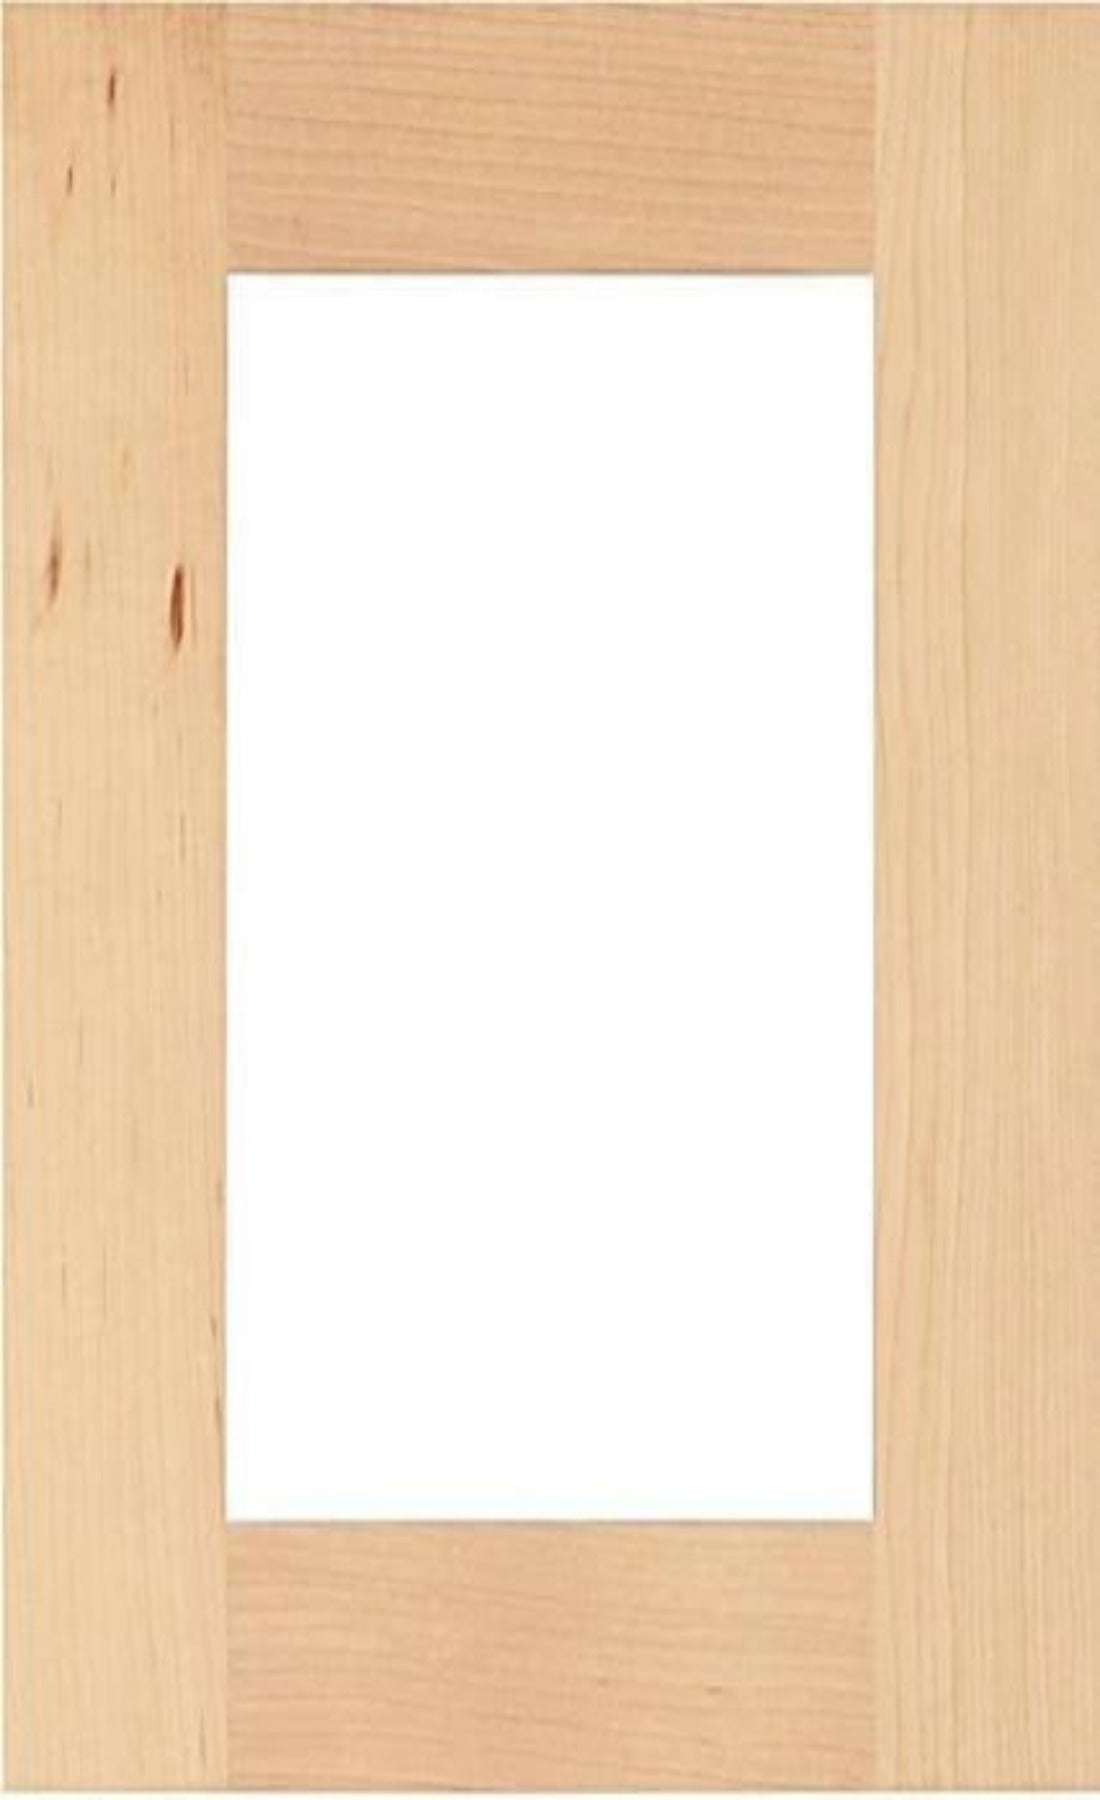 Paint Grade Hard Maple Wilmington Shaker Mullion Custom Cabinet Doors - 1 Lite/Frame Only